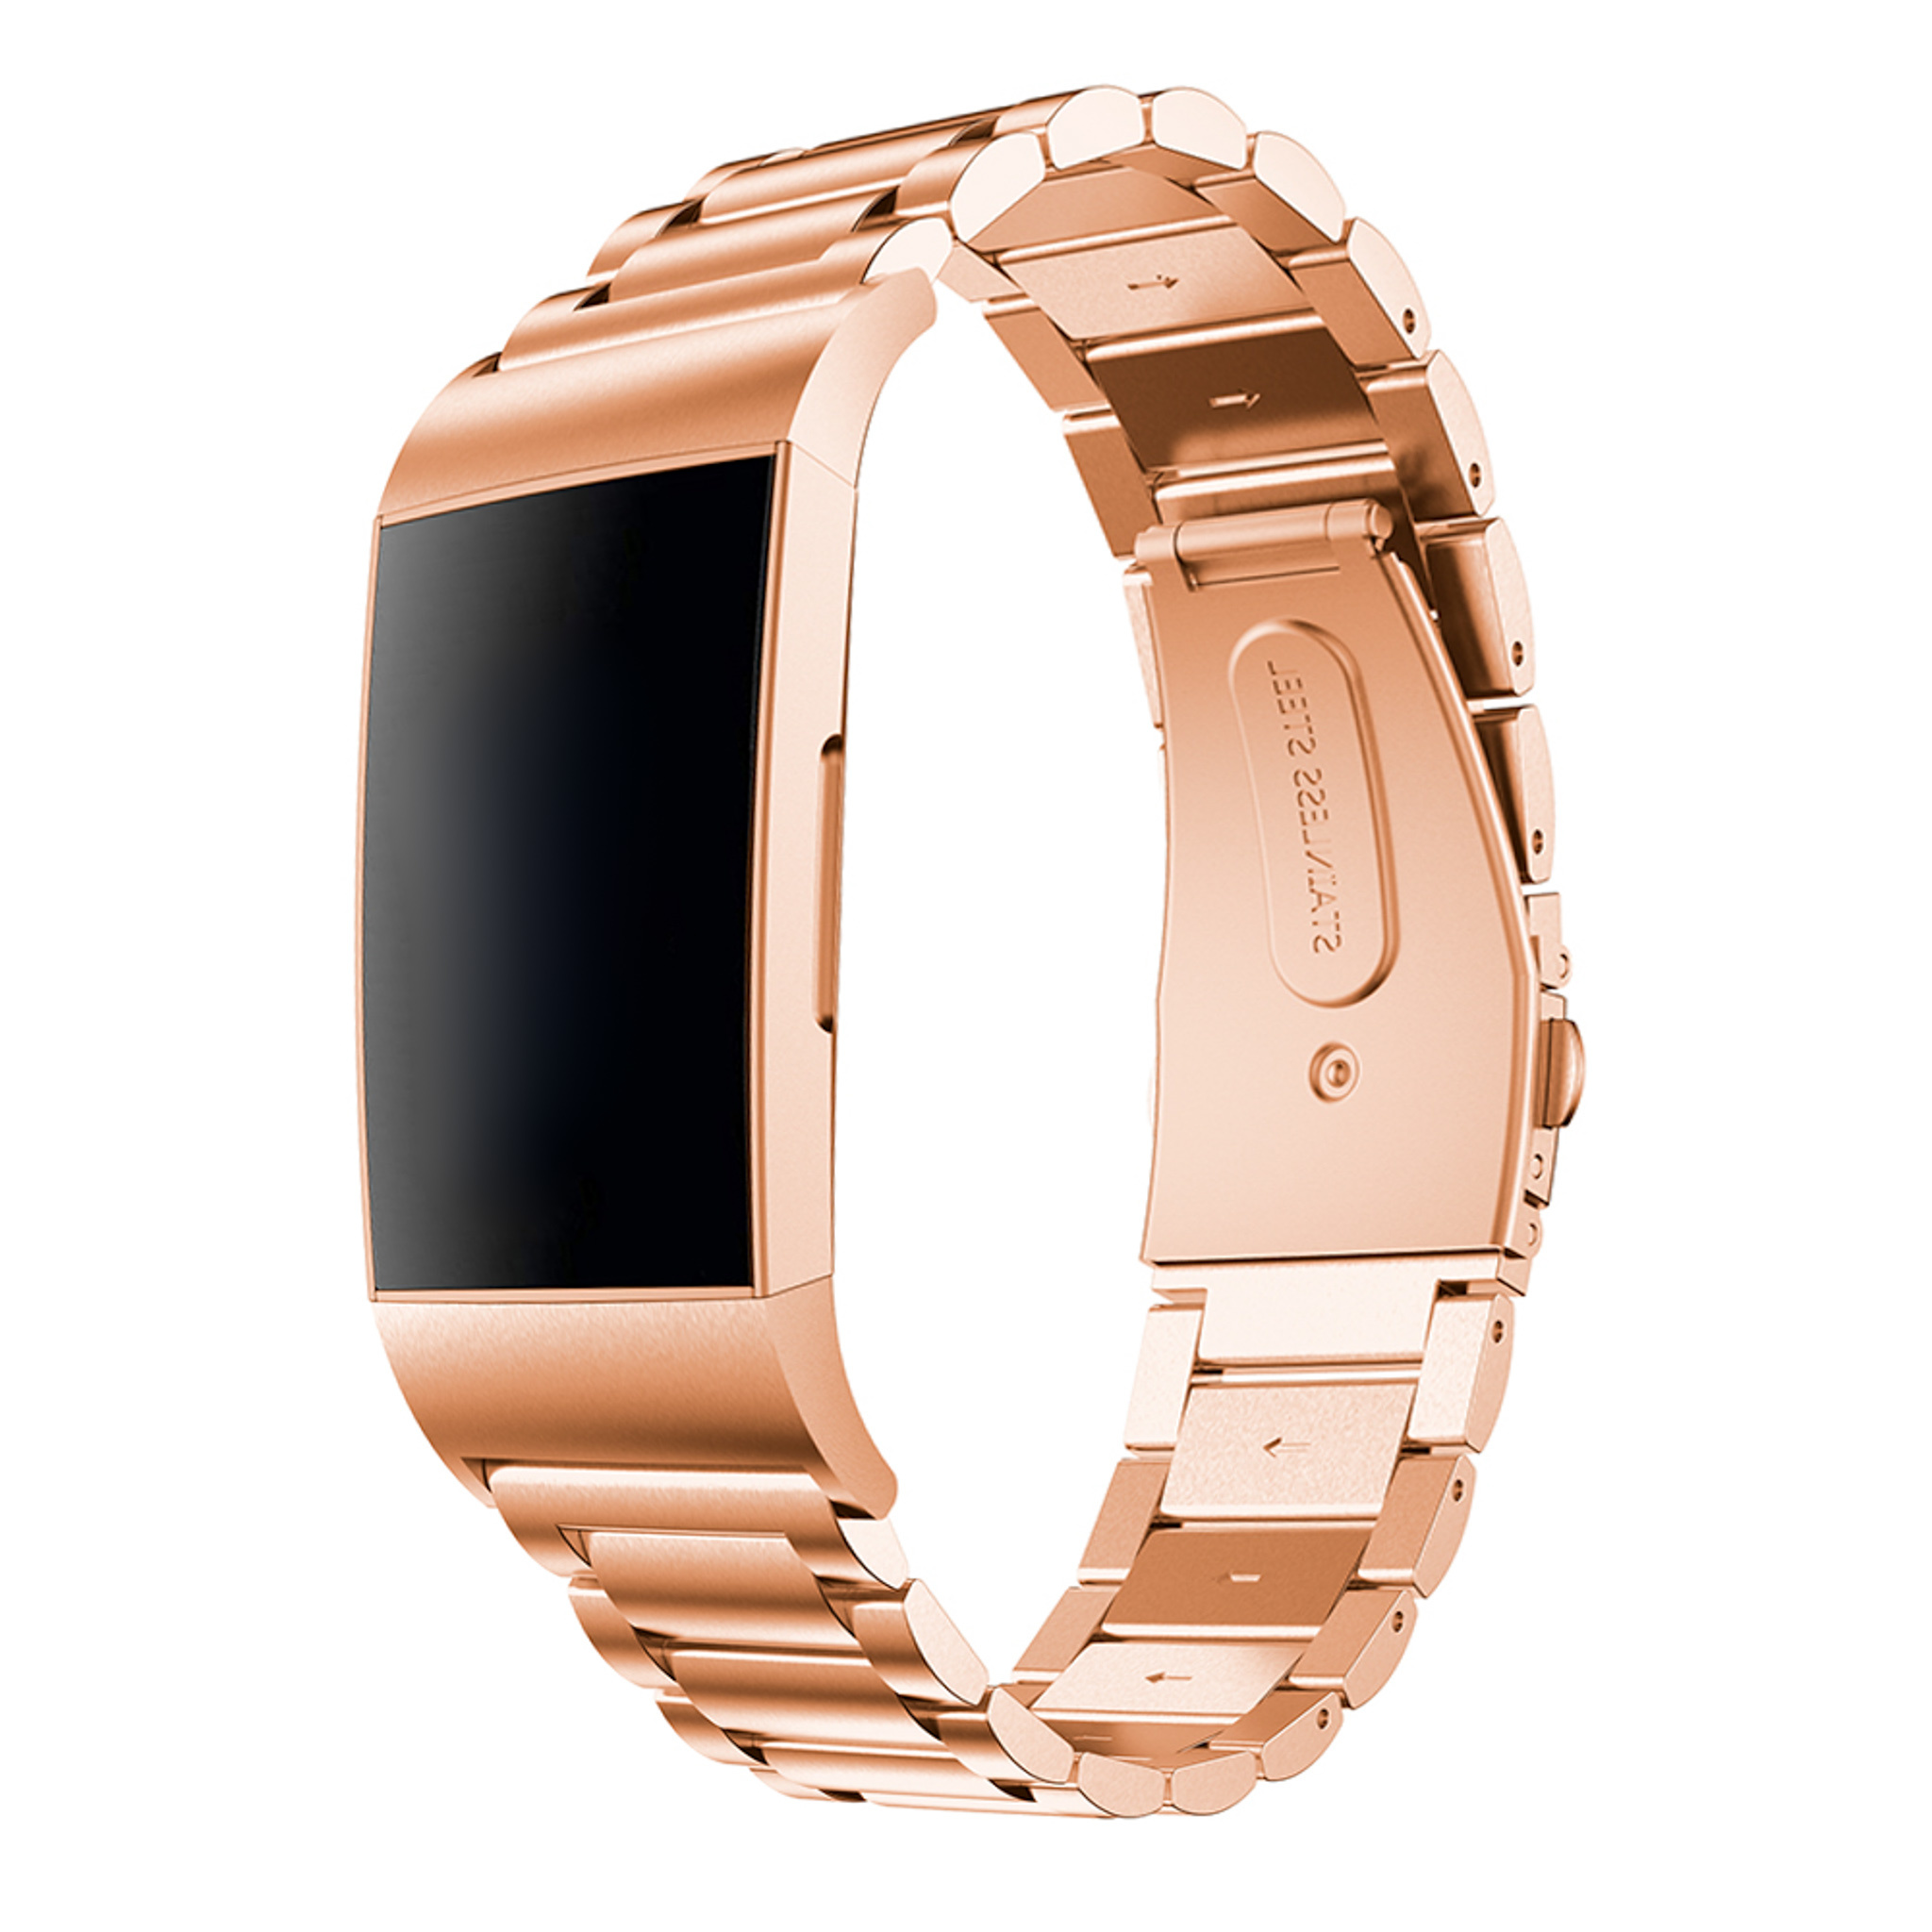 Cinturino a maglie in acciaio con perline per Fitbit Charge 3 & 4 - oro rosa